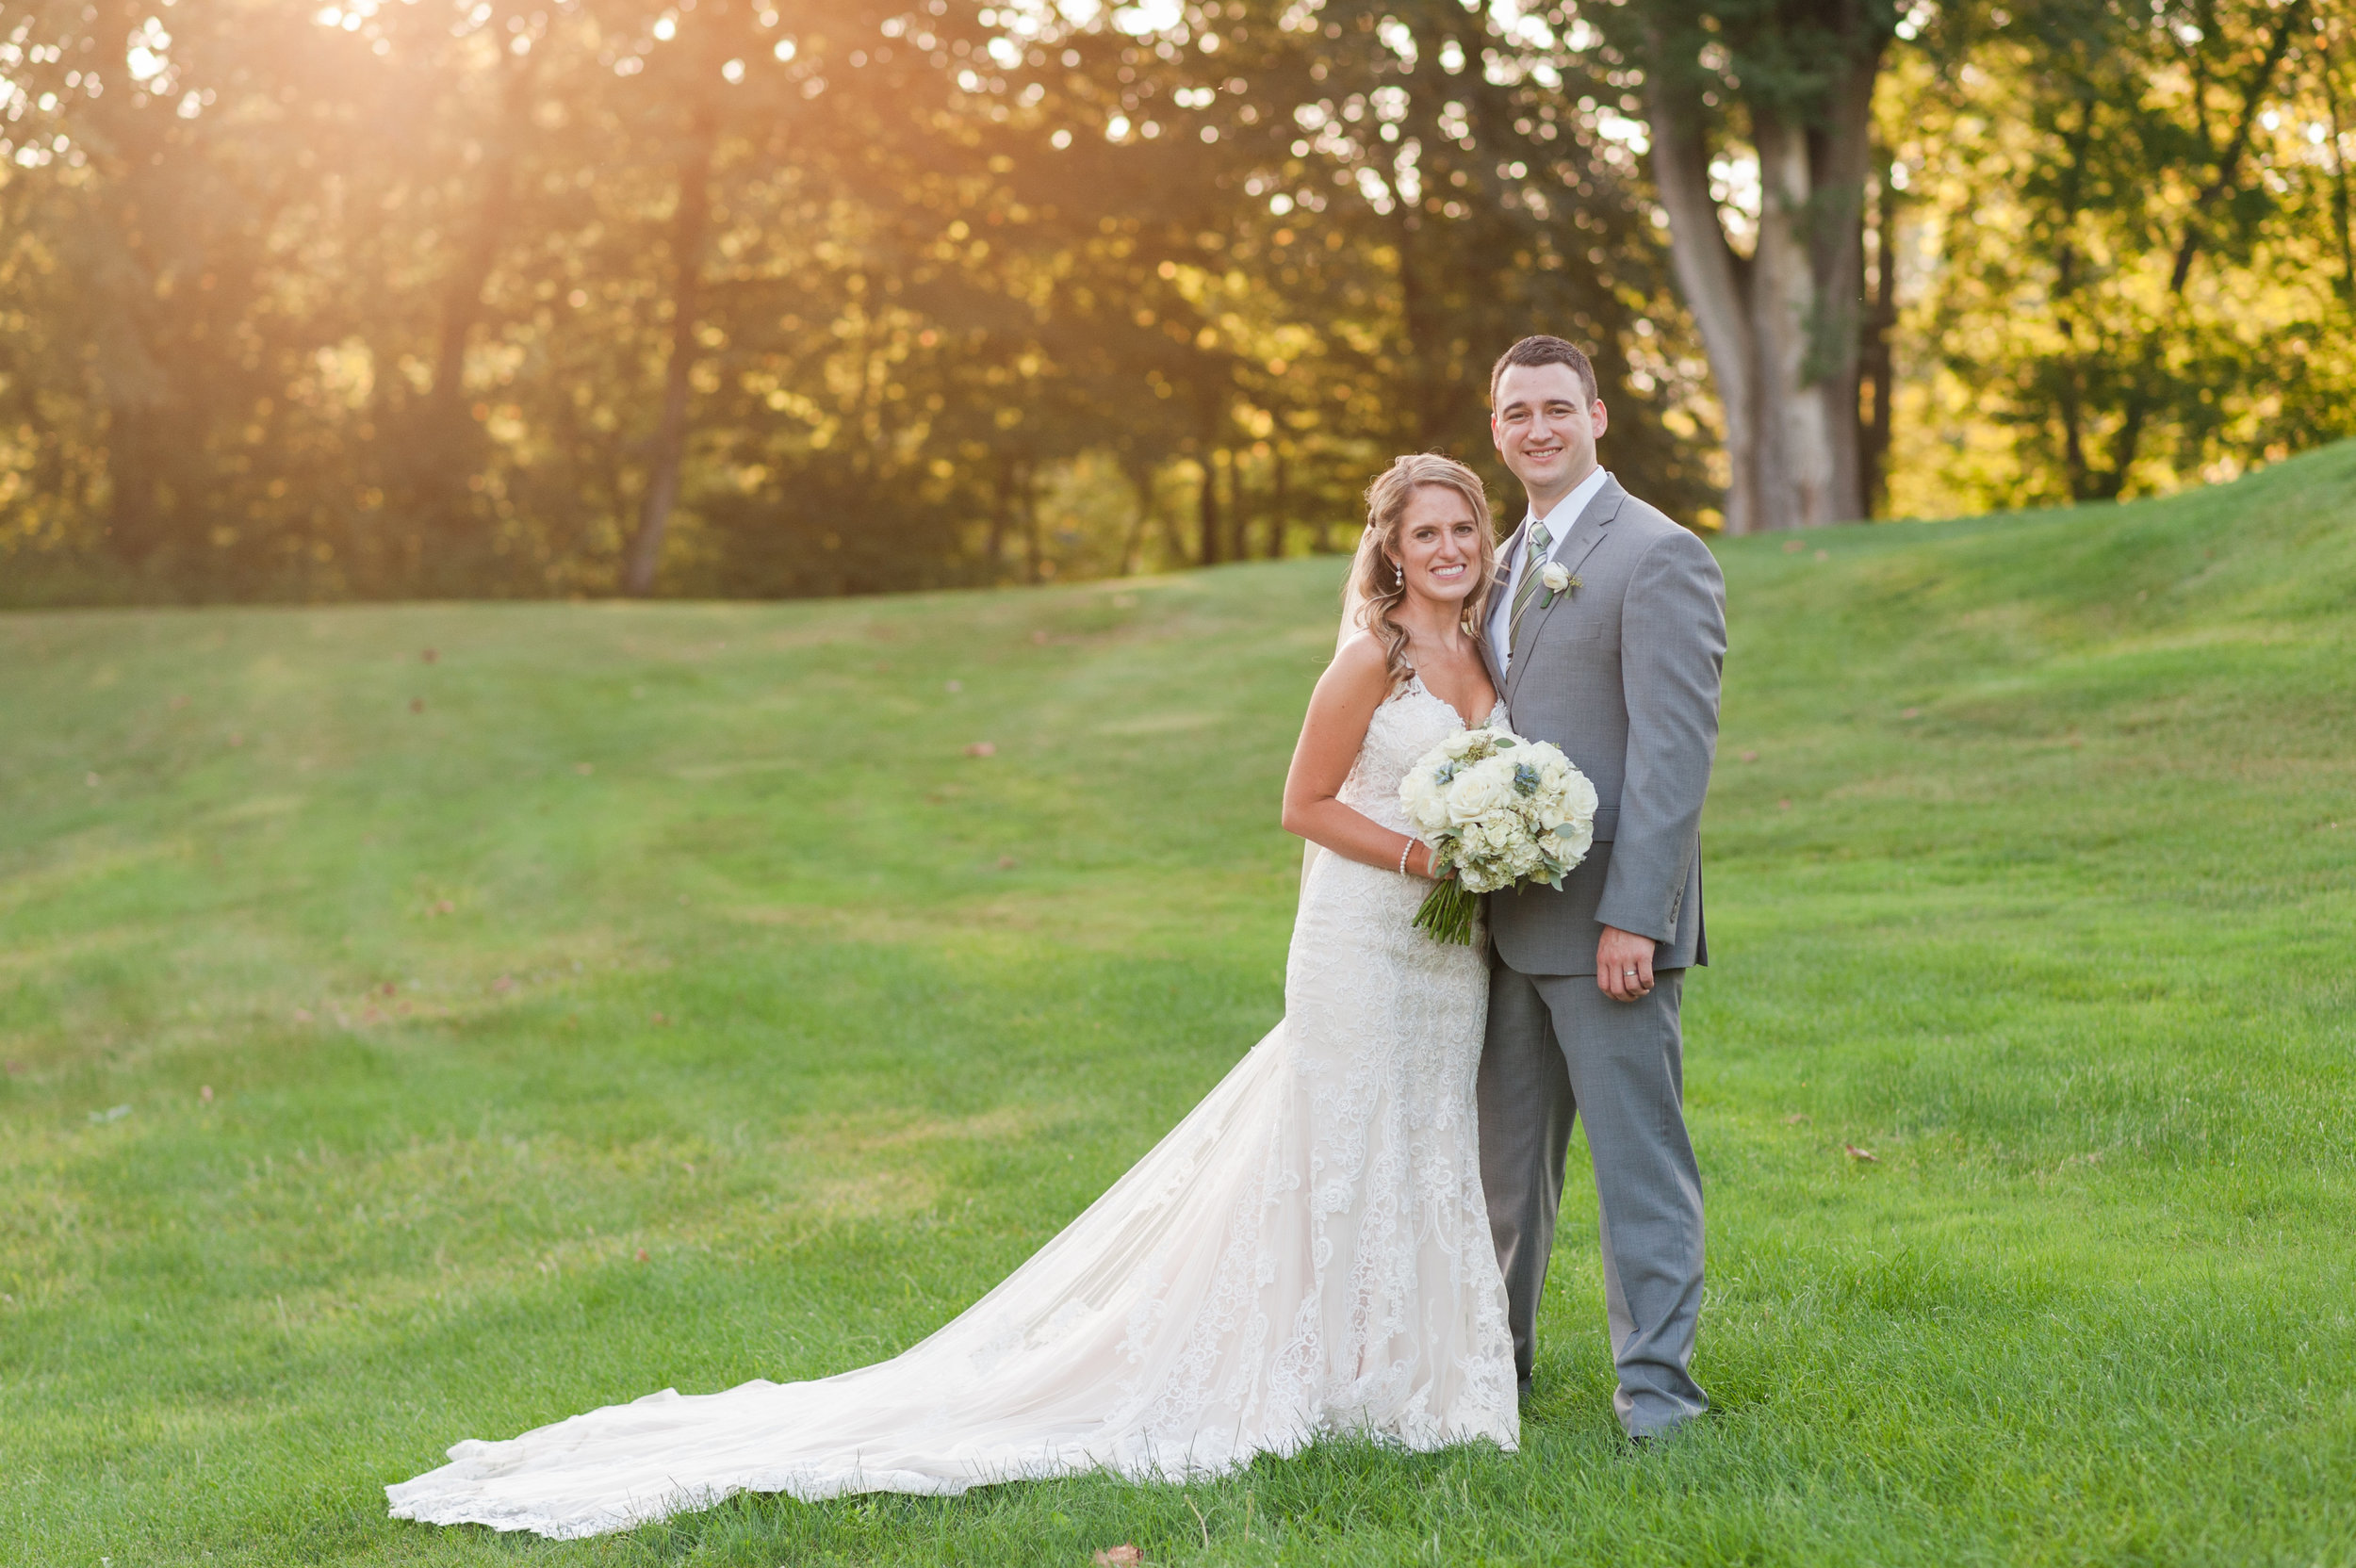 Gorgeous Wedding Photos - Ohio Wedding Venues